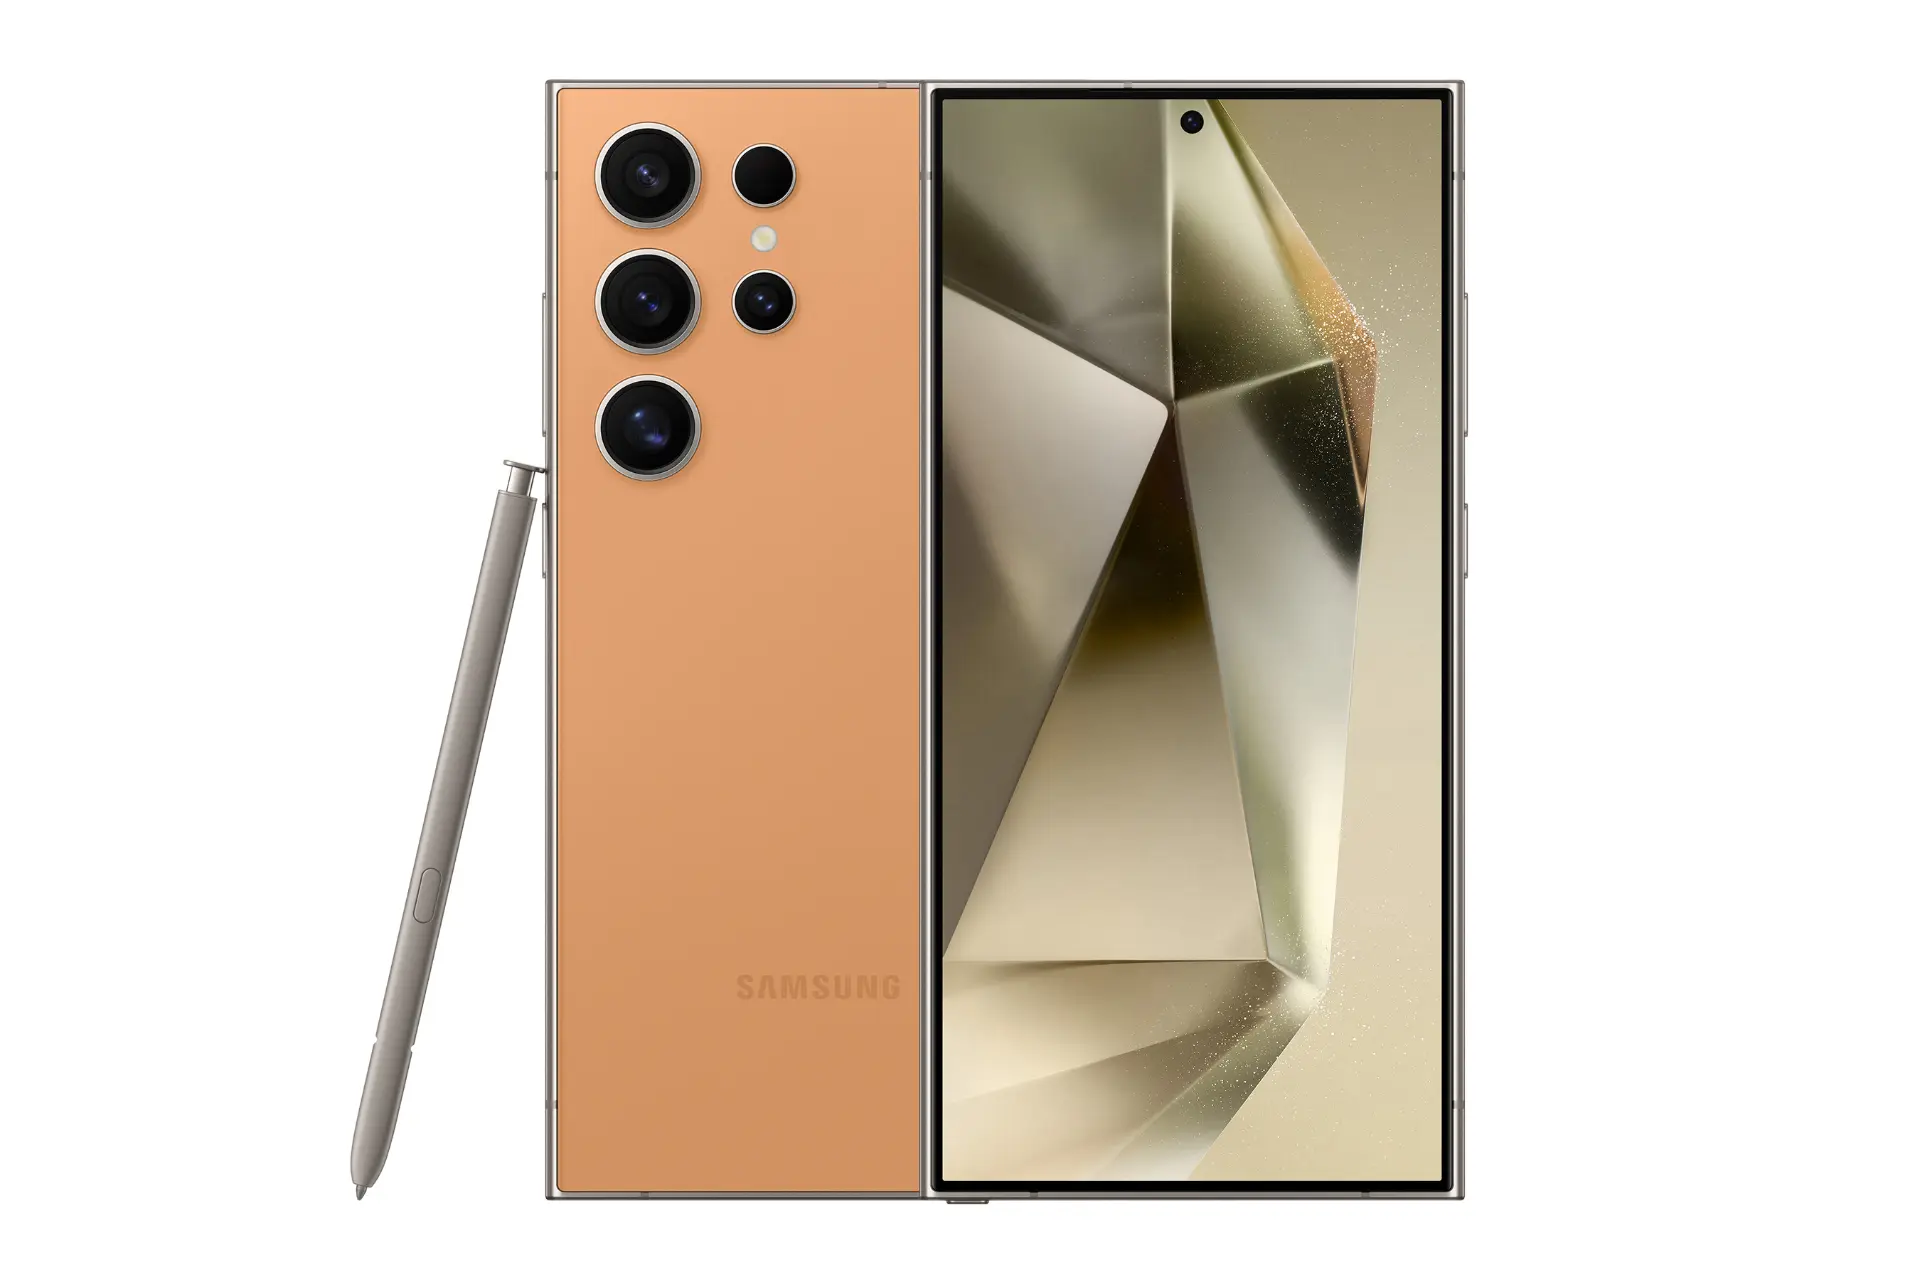 نمای کلی گوشی موبایل گلکسی اس 24 اولترا سامسونگ مشکی / Samsung Galaxy S24 Ultra با نمایشگر روشن و نمایش لوگو، دوربین های پنل پشت و قلم رنگ نارنجی